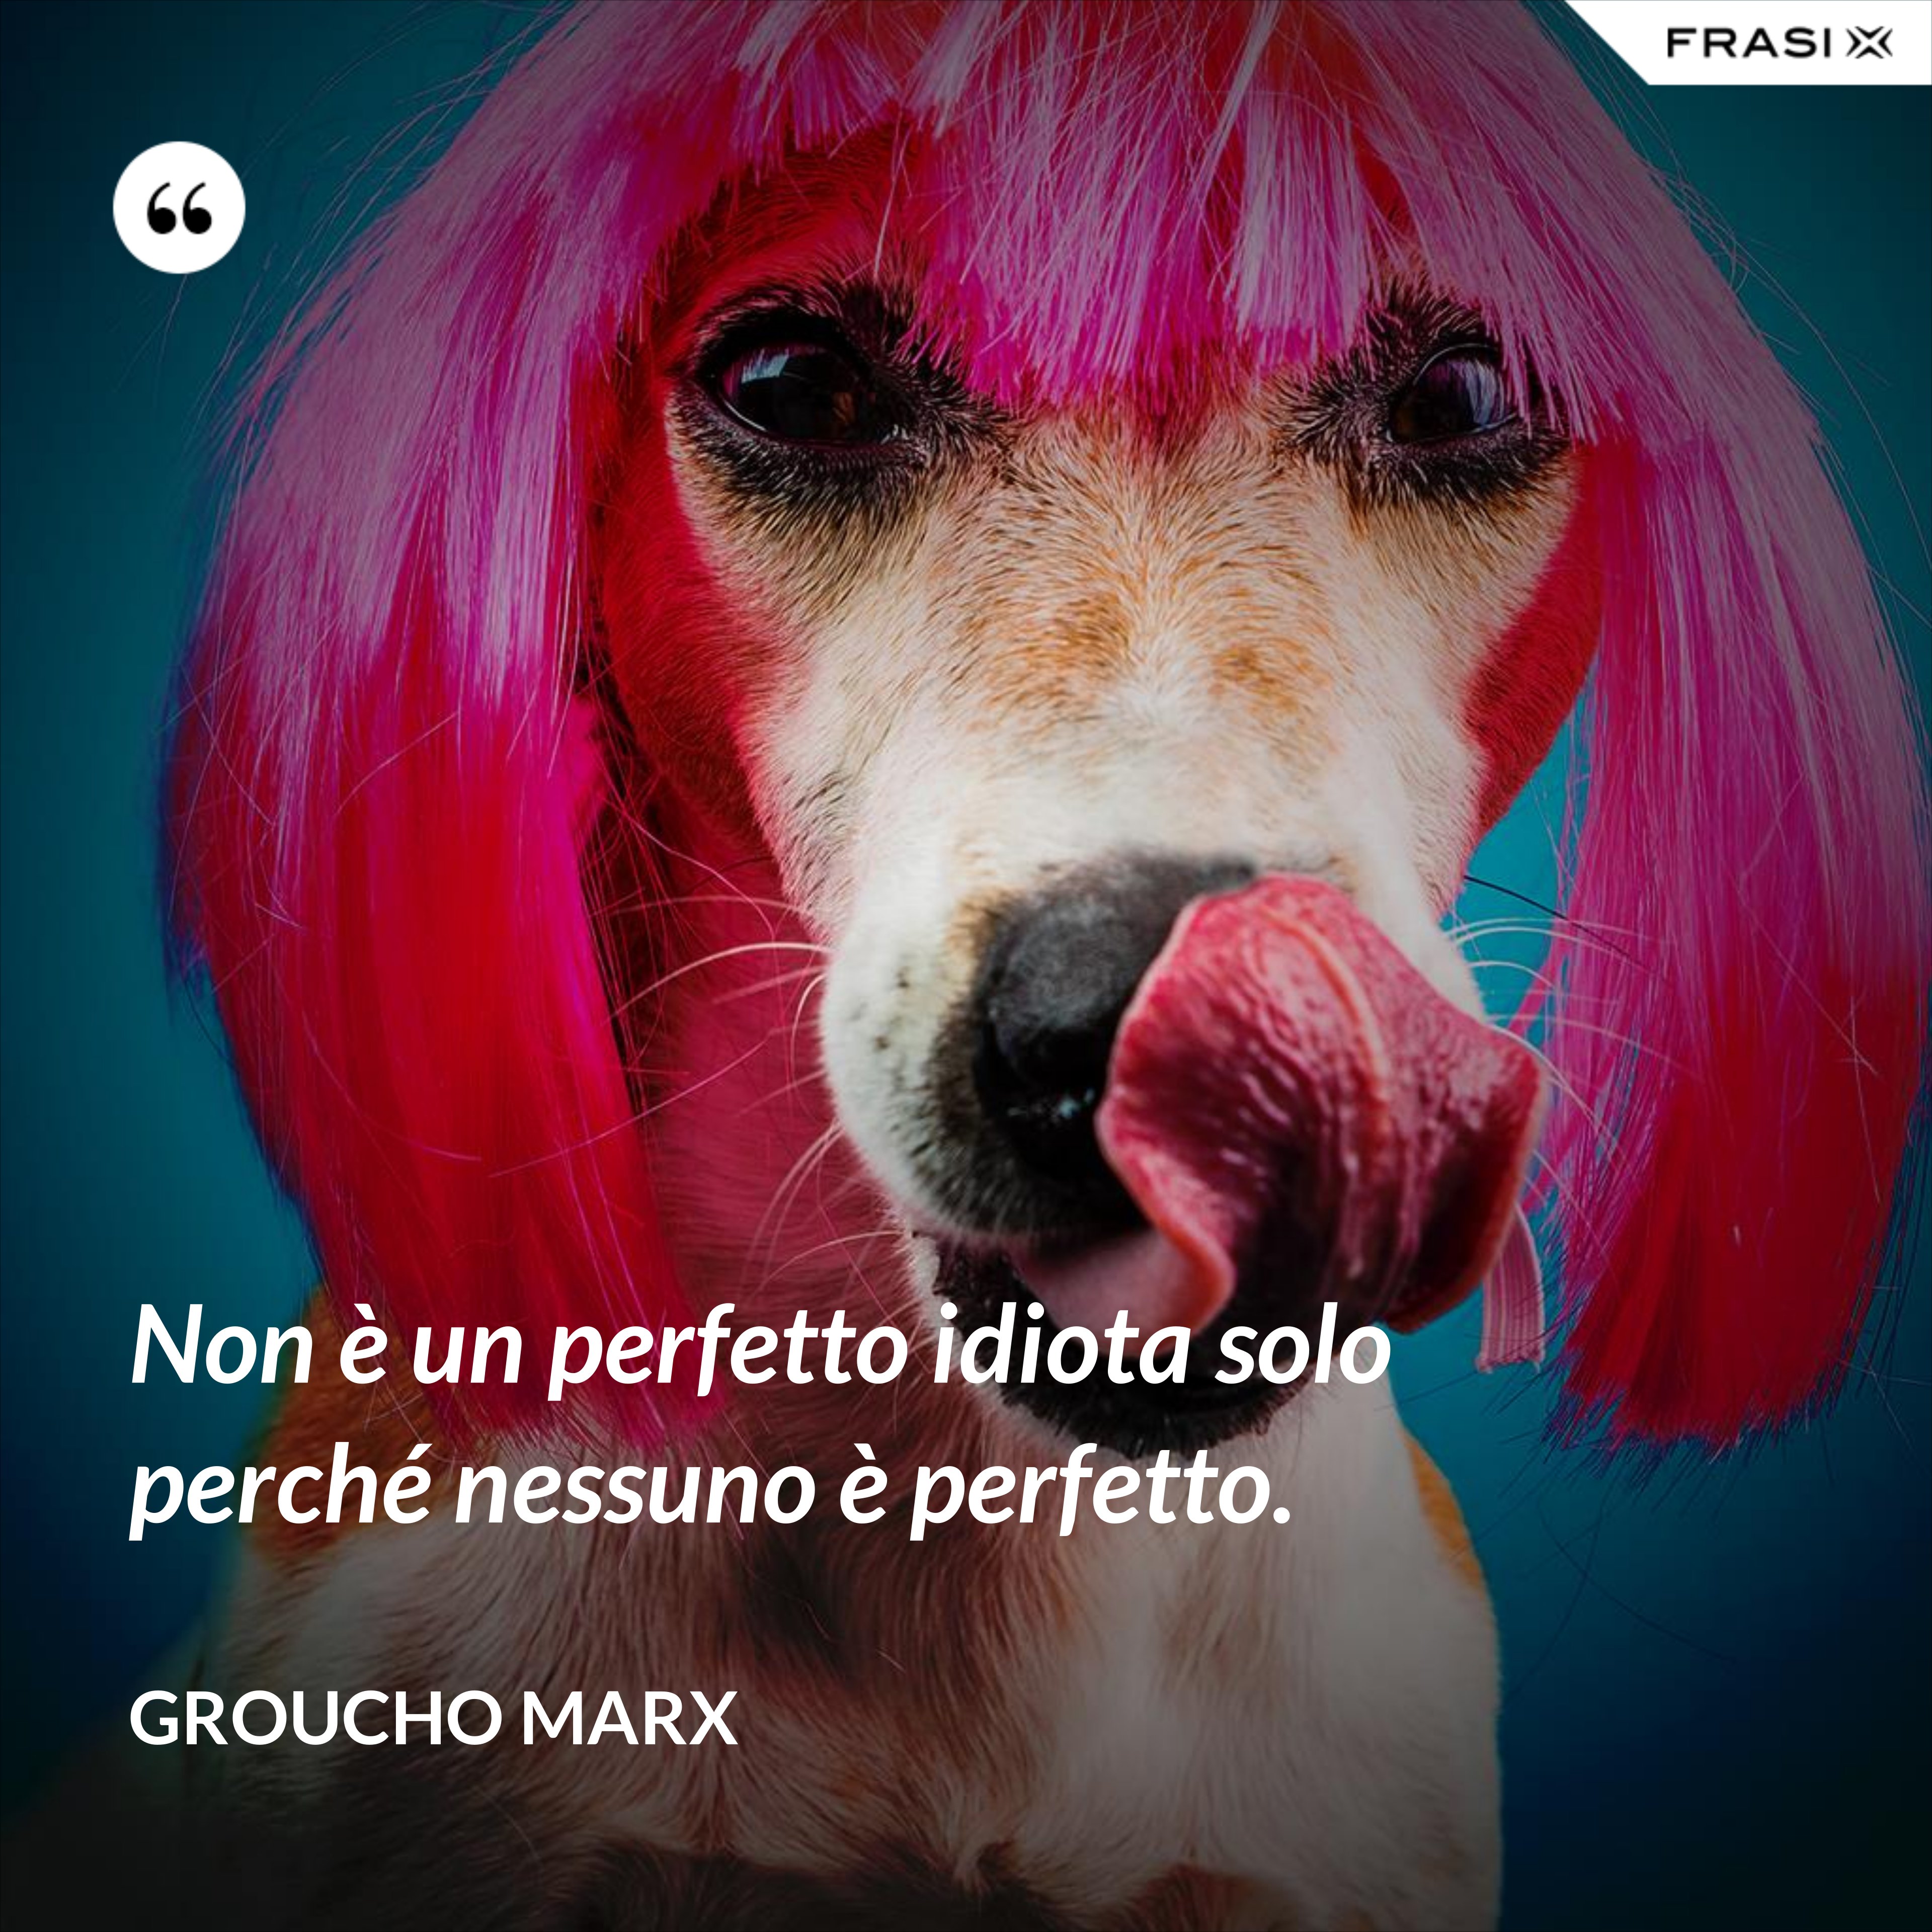 Non è un perfetto idiota solo perché nessuno è perfetto. - Groucho Marx